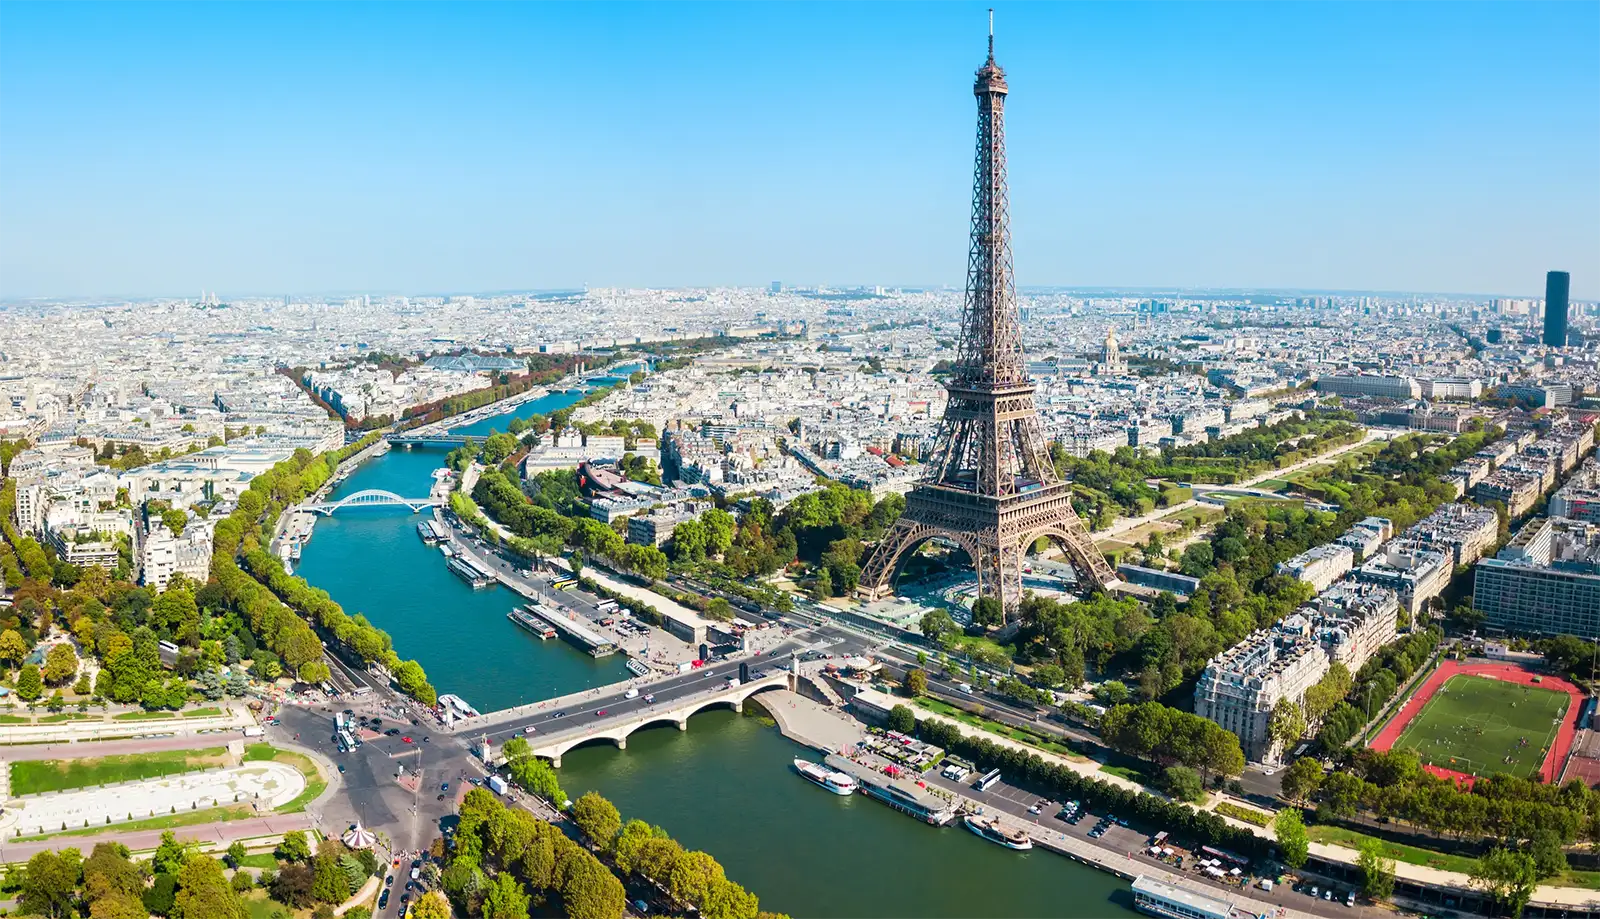 Trải nghiệm du thuyền sông Seine - Chiêm ngưỡng Paris từ góc nhìn mới lạ